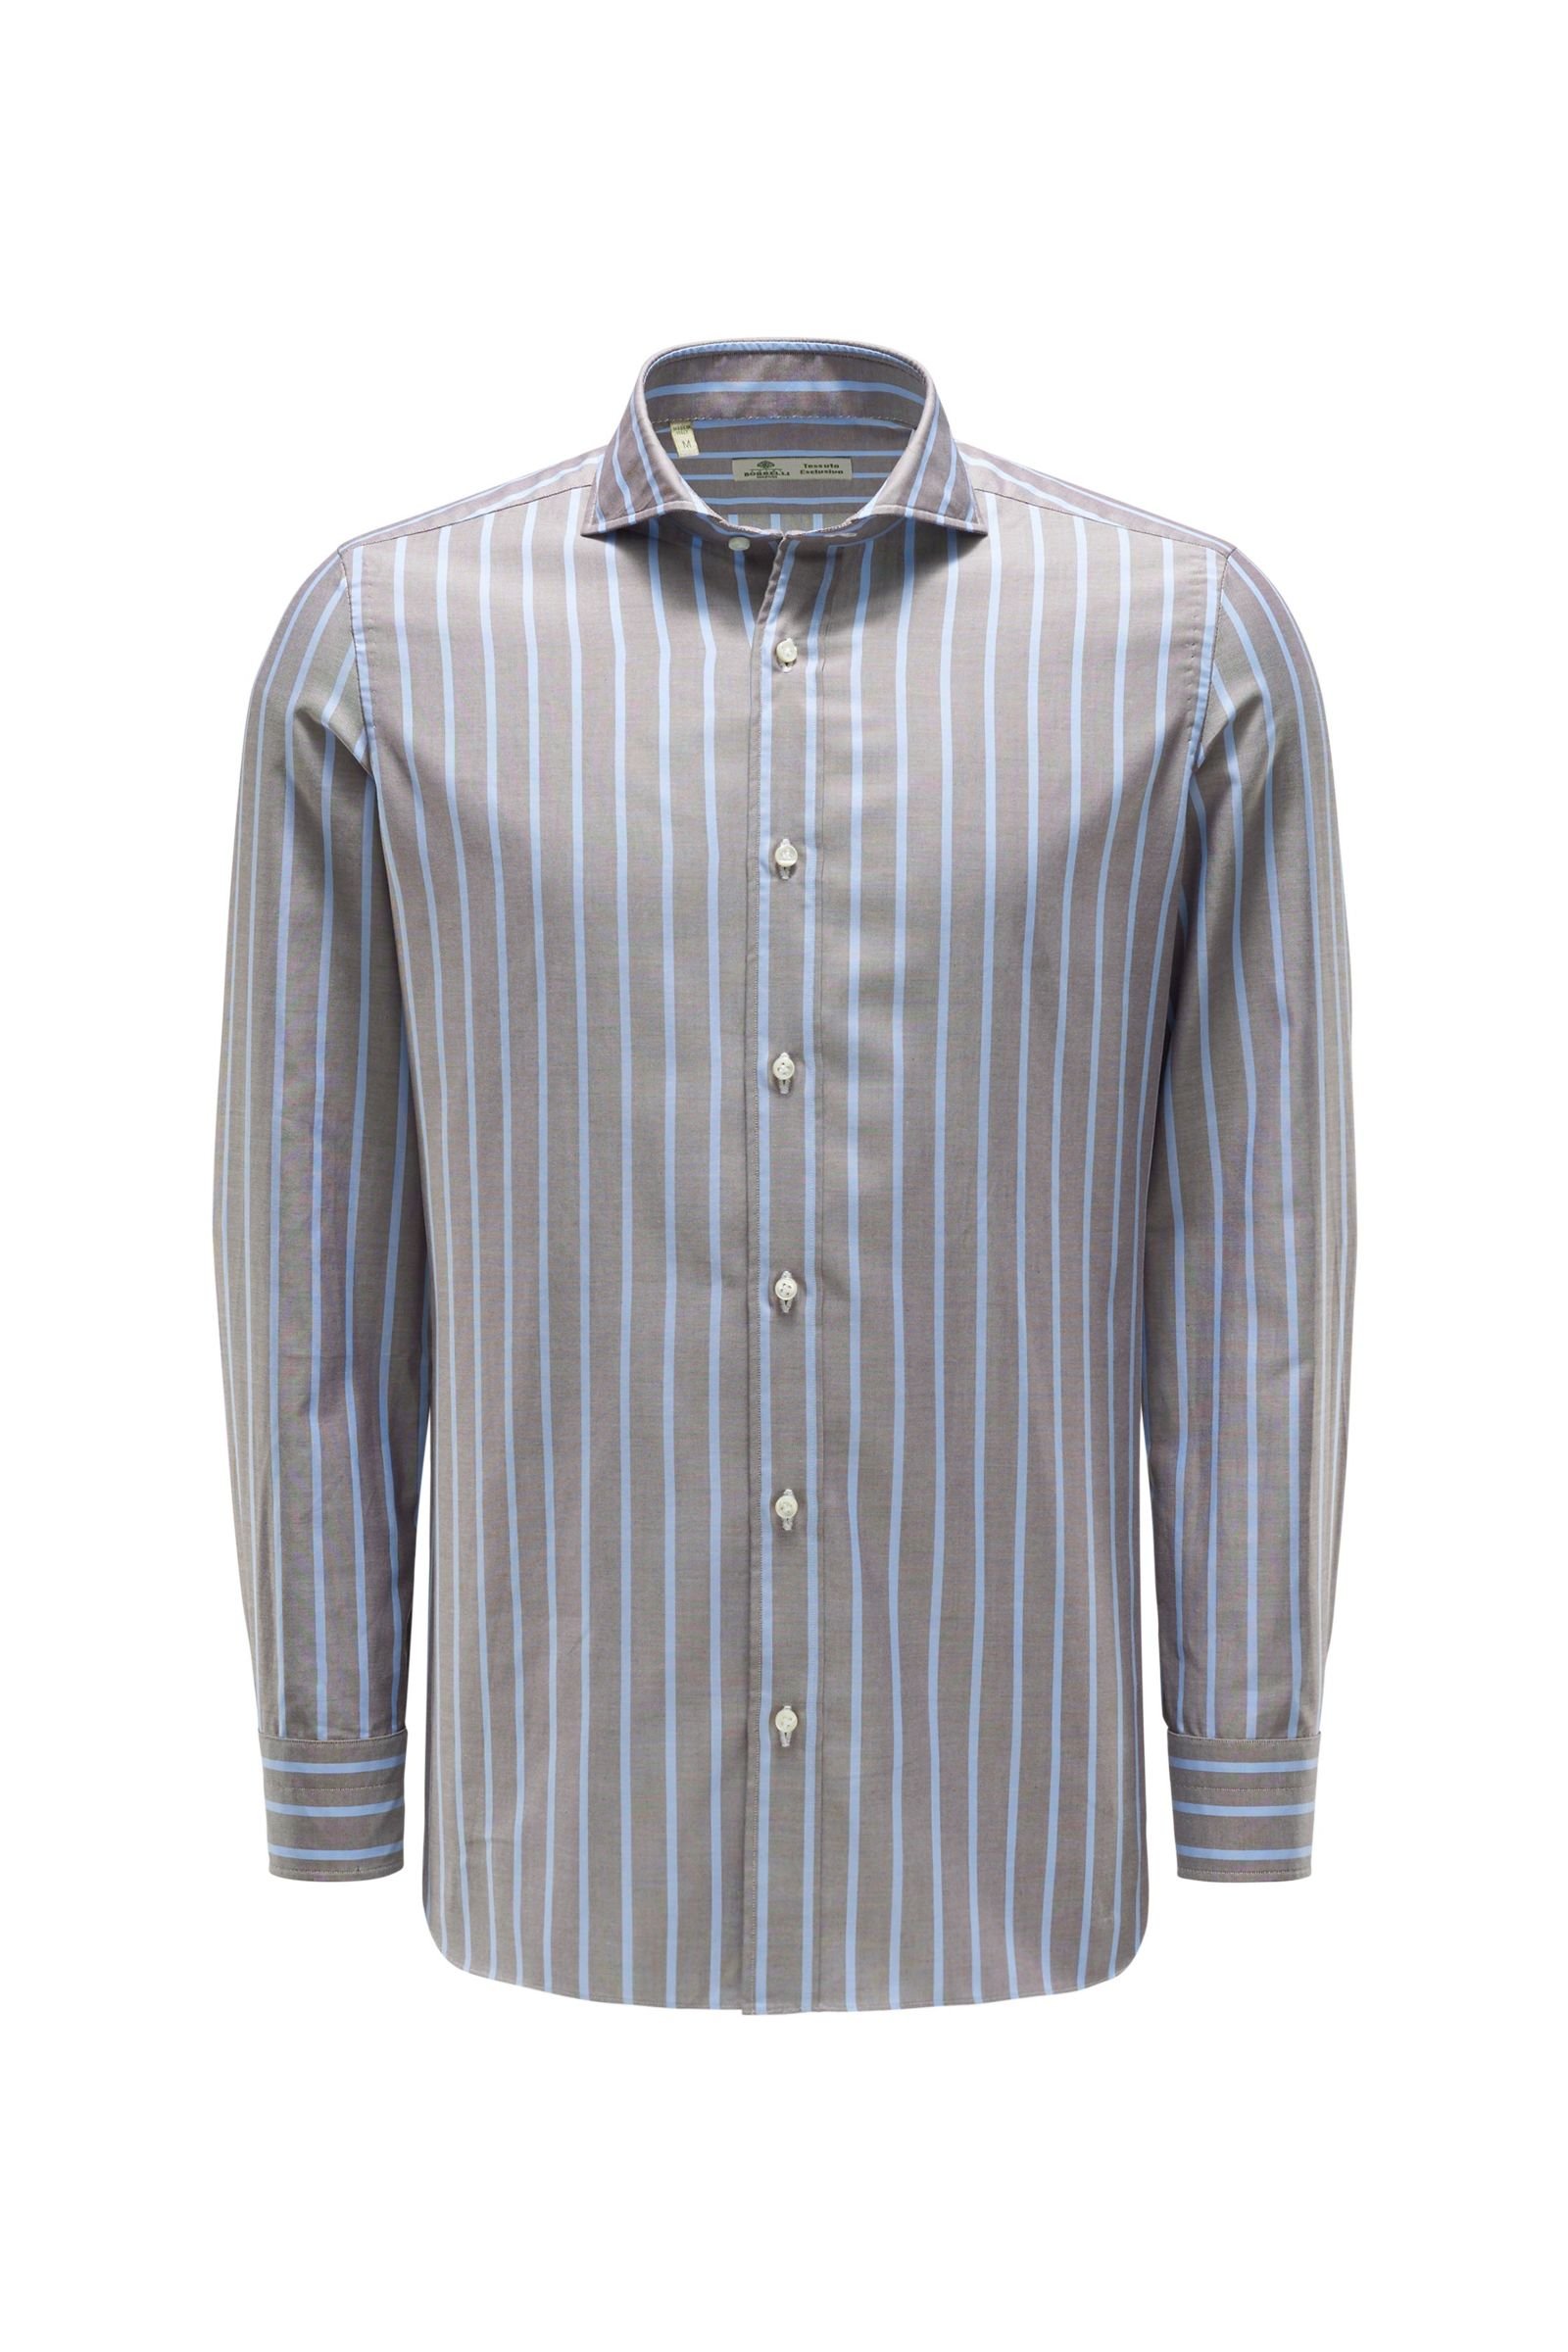 Oxford shirt shark collar grey-brown/light blue striped